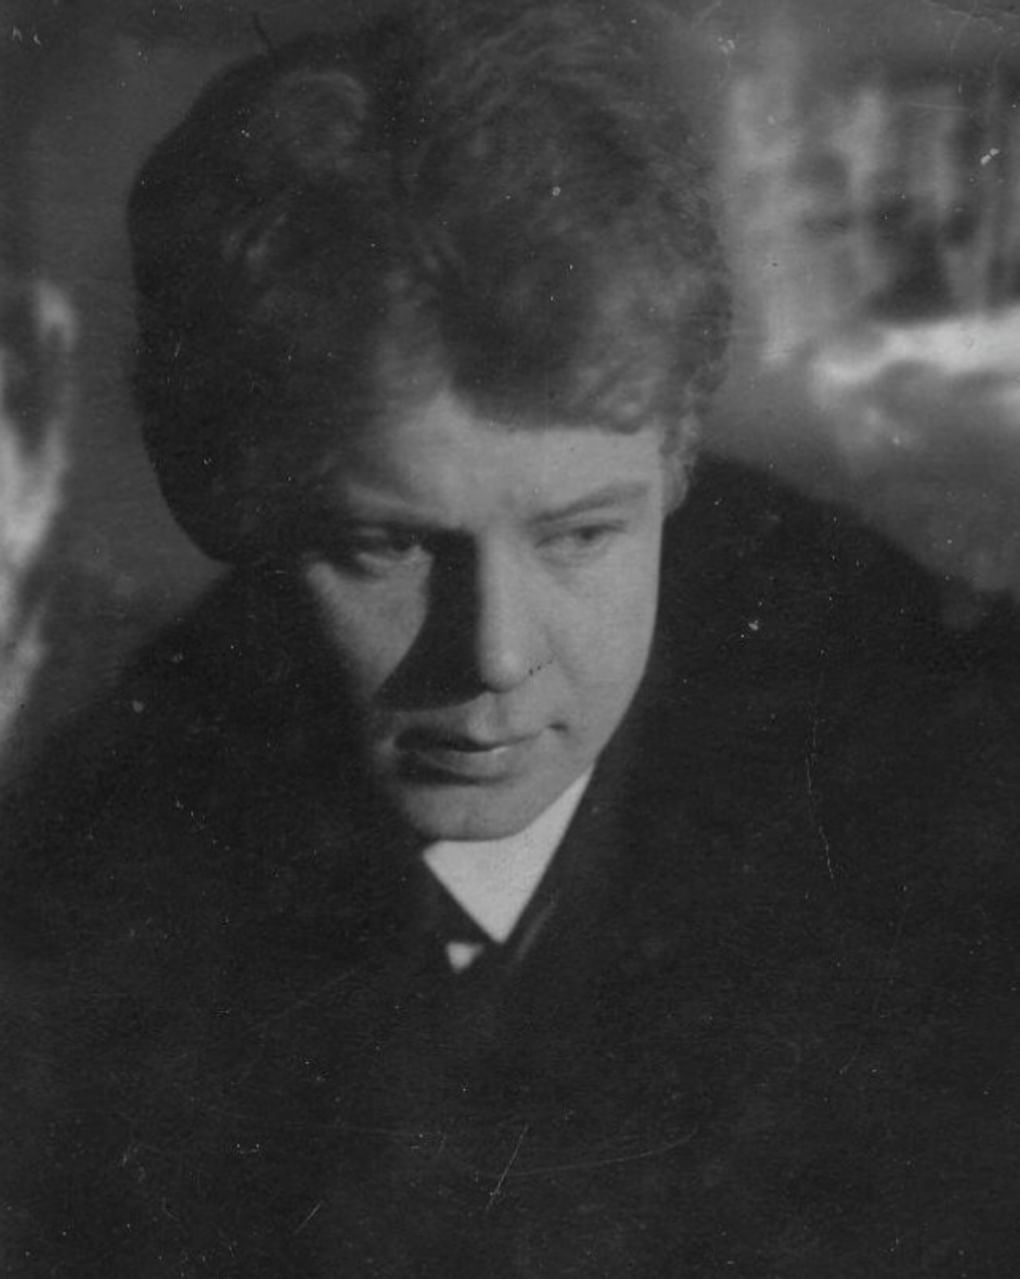 Сергей Есенин. 1924 год. Фотография: Моисей Наппельбаум / Государственный исторический музей, Москва